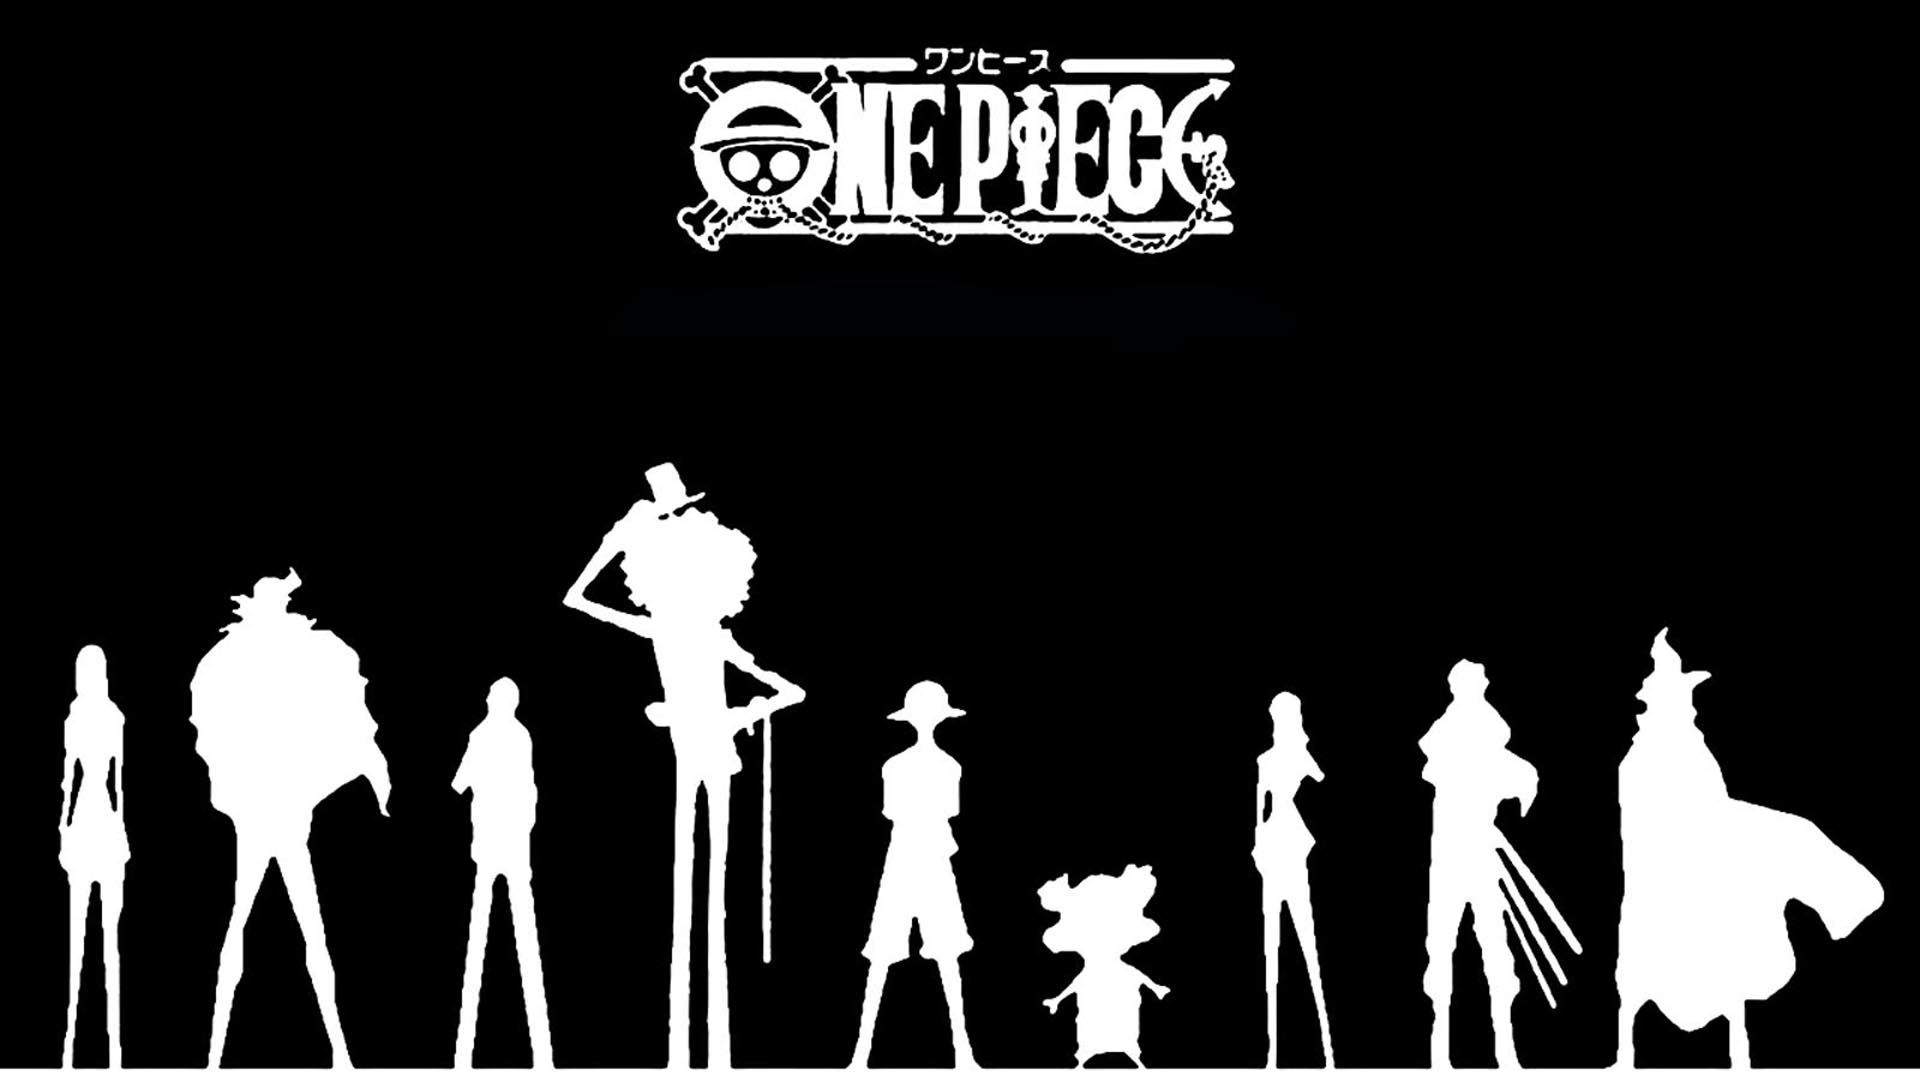 Hình nền One Piece đen trắng mang đến một cảm giác cổ điển và độc đáo cho màn hình của bạn. Cùng thưởng thức những hình ảnh đen trắng tuyệt đẹp về Luffy và nhóm hải tặc Mugiwara bạn nhé!